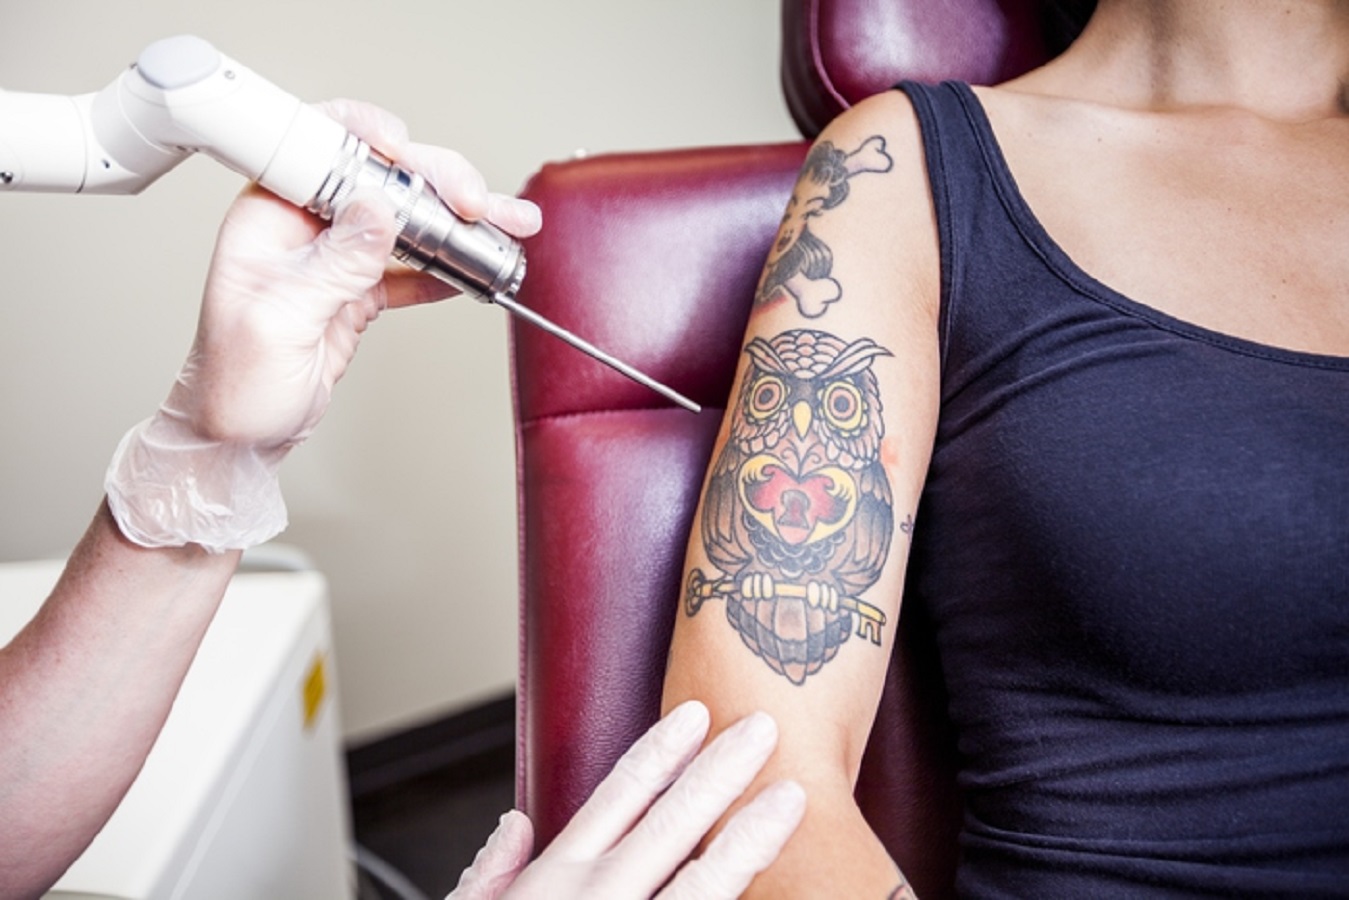 Tatuaggi: cosa prevede la proposta di legge per disciplinarli